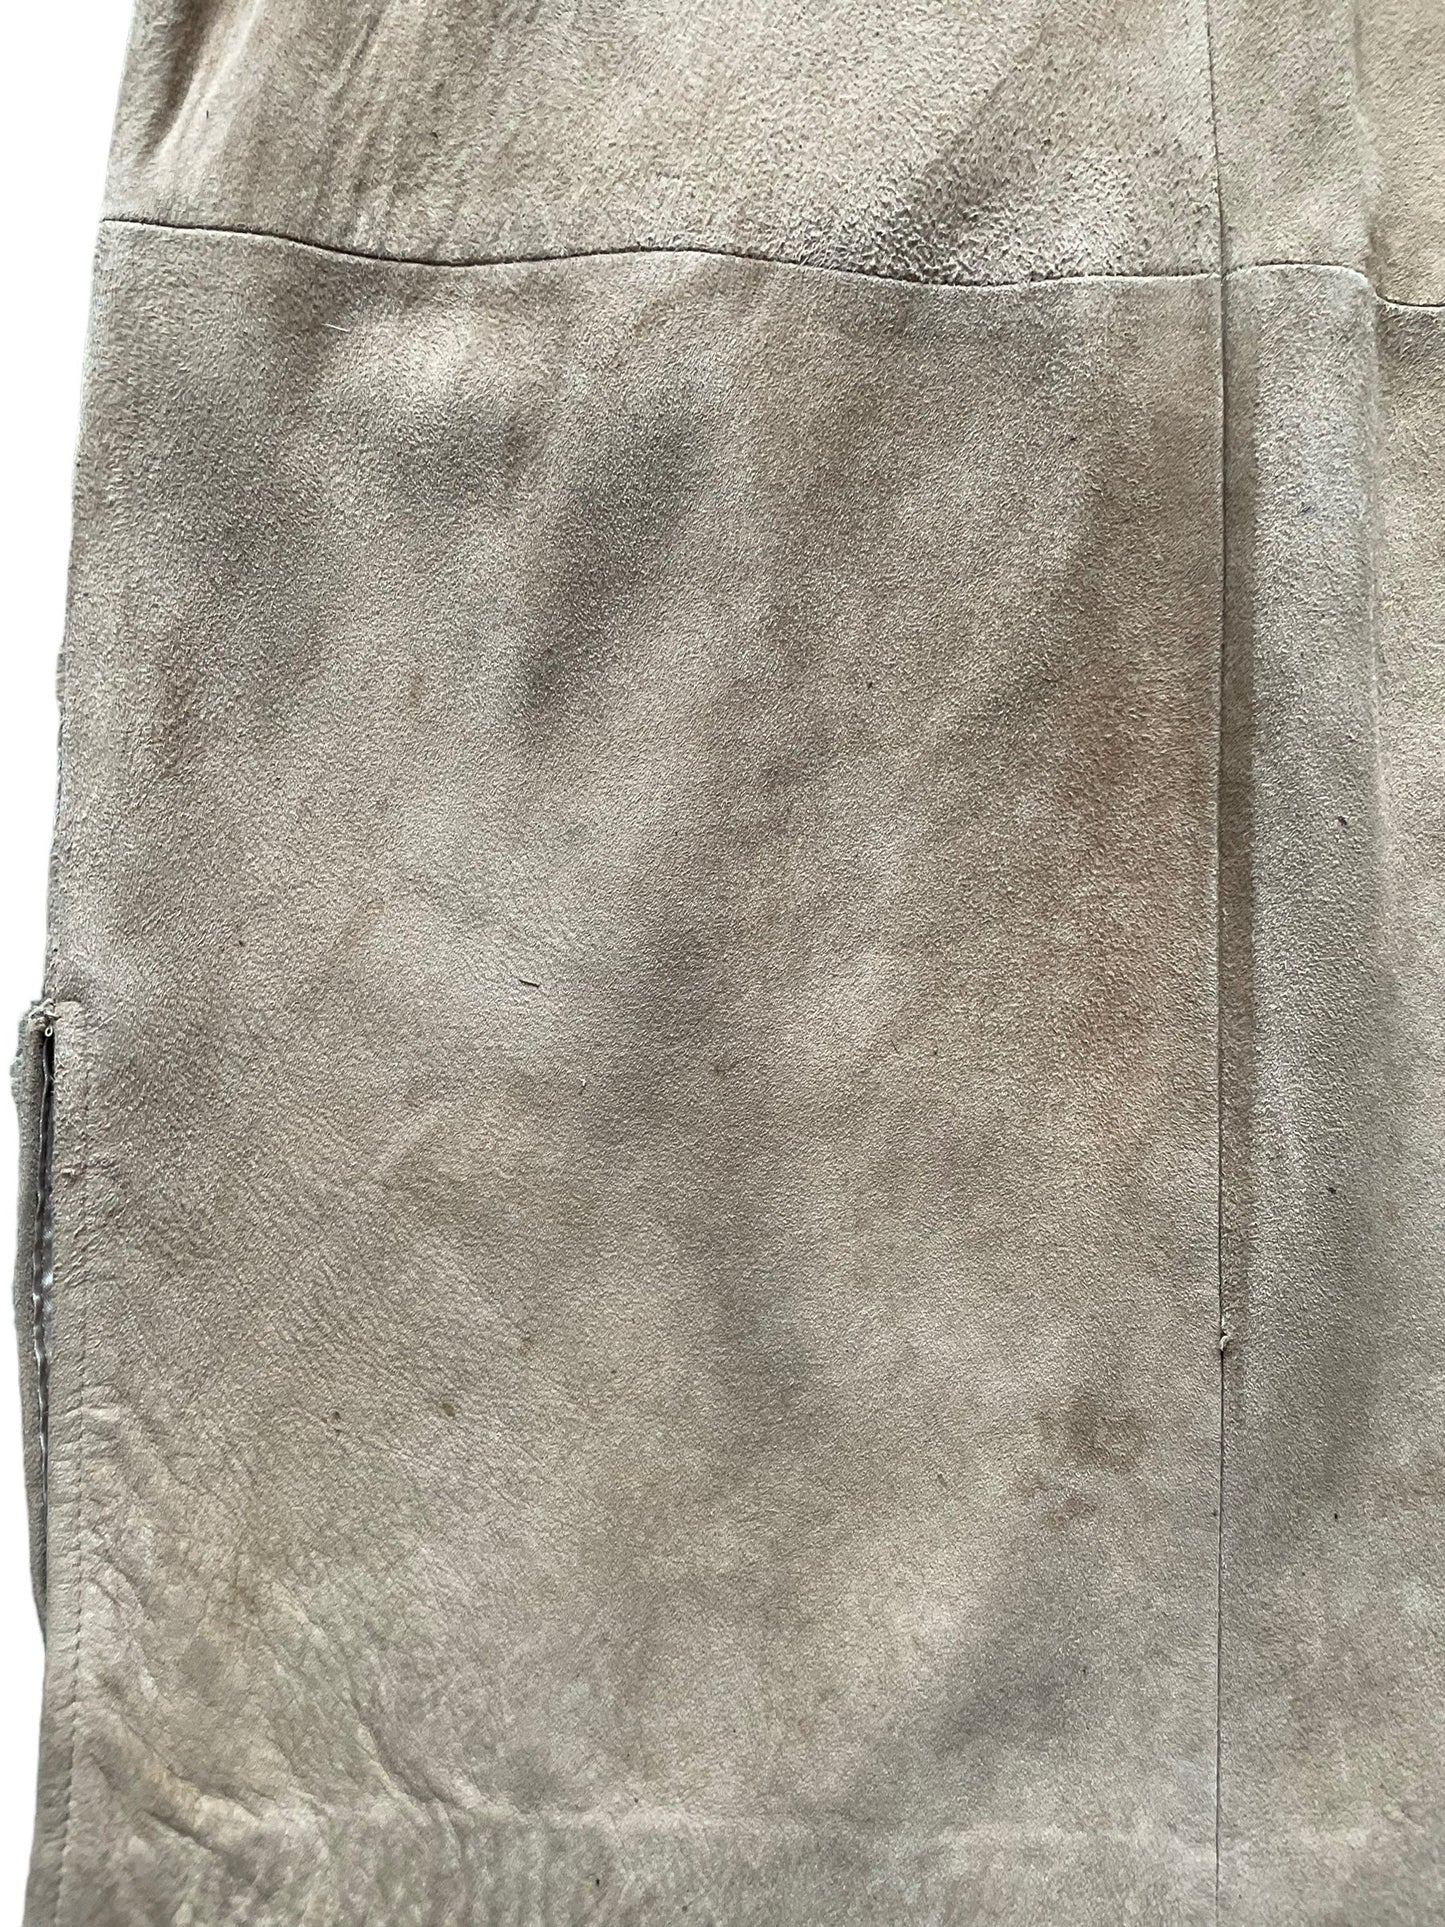 Flaw details of lower back left Vintage 1960s Suede Coat with Mink Collar SZ M-L | Seattle True Vintage | Barn Owl Vintage Coats